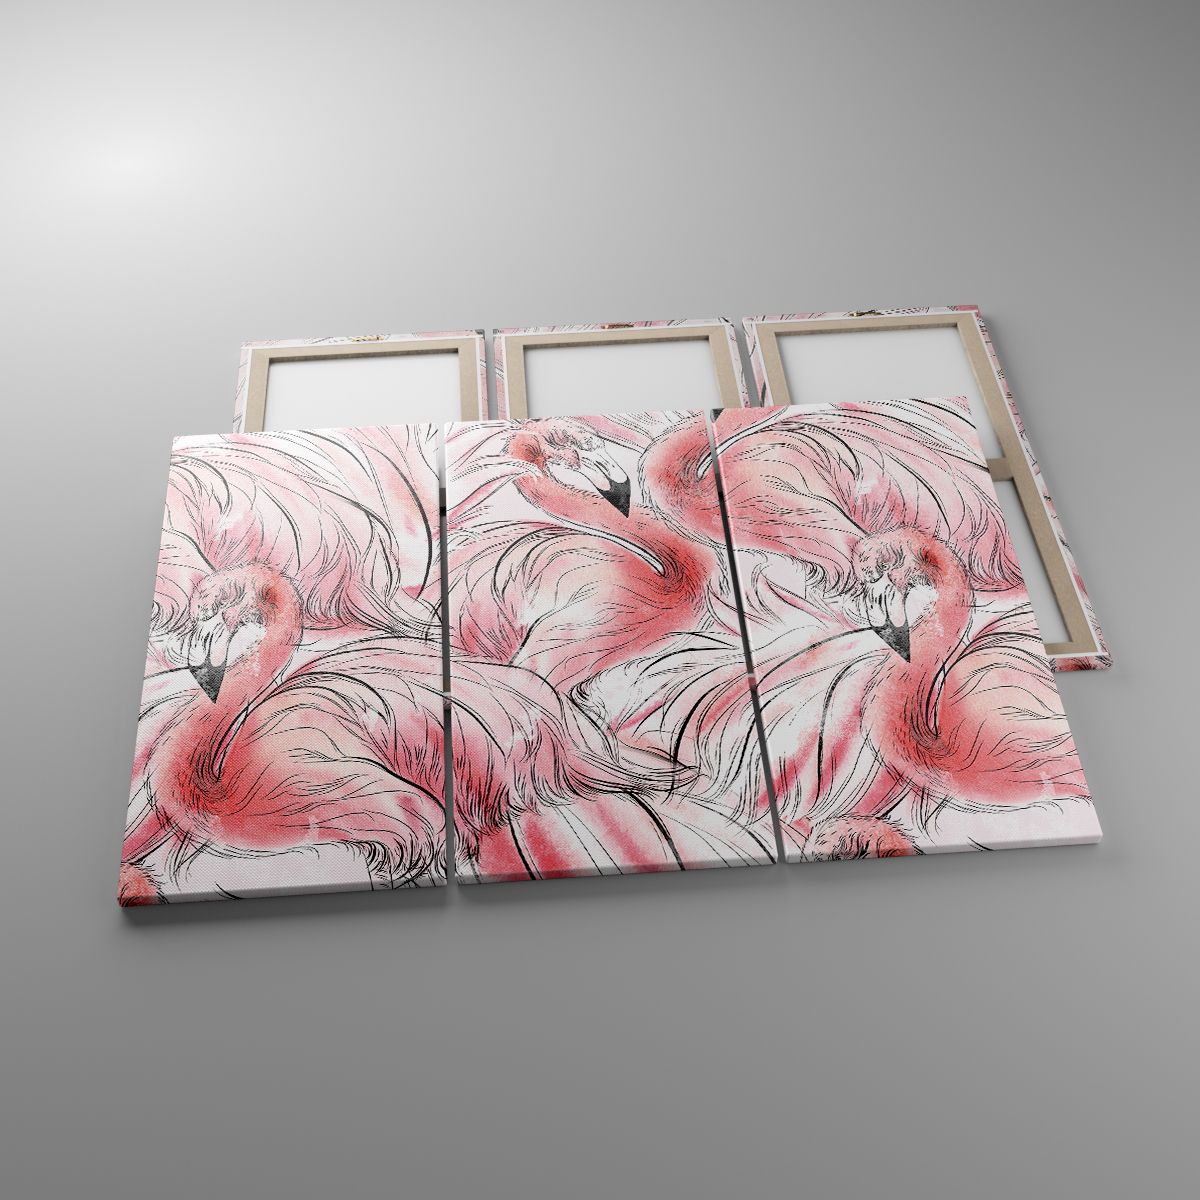 Leinwandbild Flamingo, Leinwandbild Vogel, Leinwandbild Grafik, Leinwandbild Zeichnung, Leinwandbild Pastellfarben